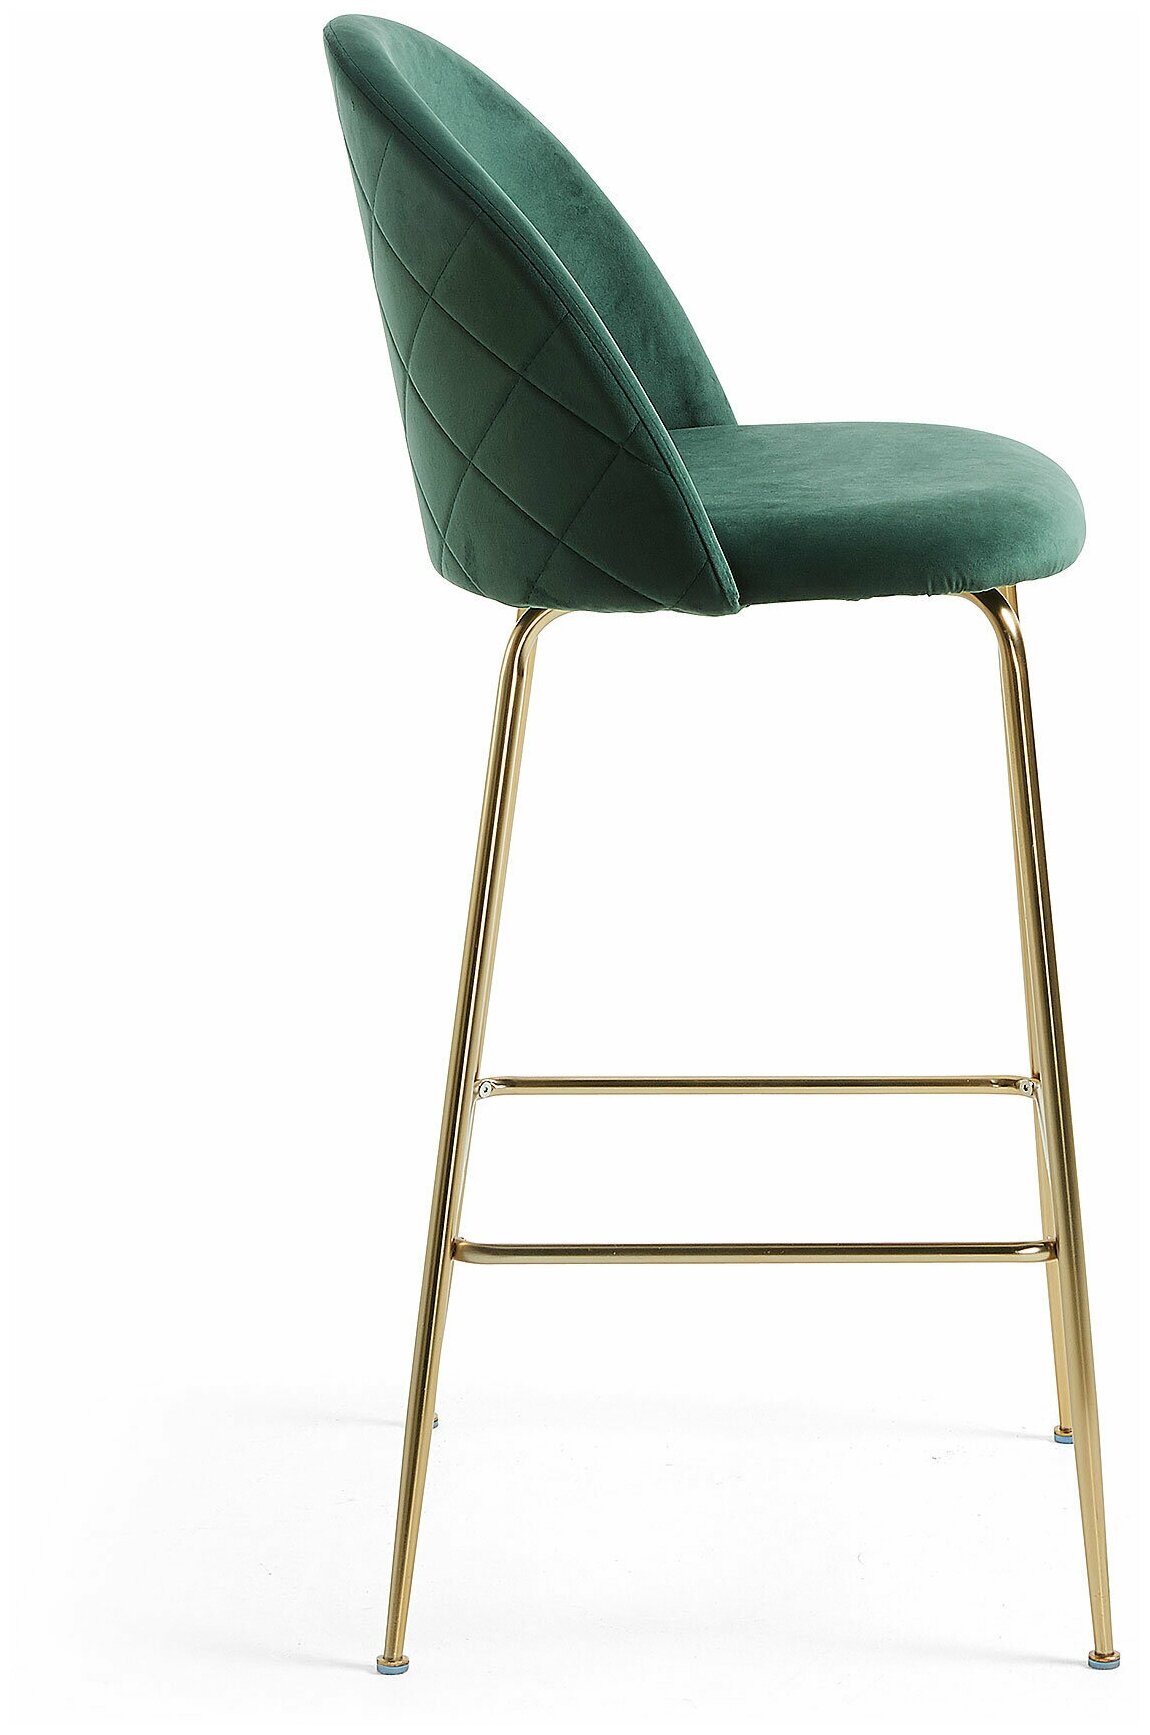 Барный стул Mystere зеленый бархат